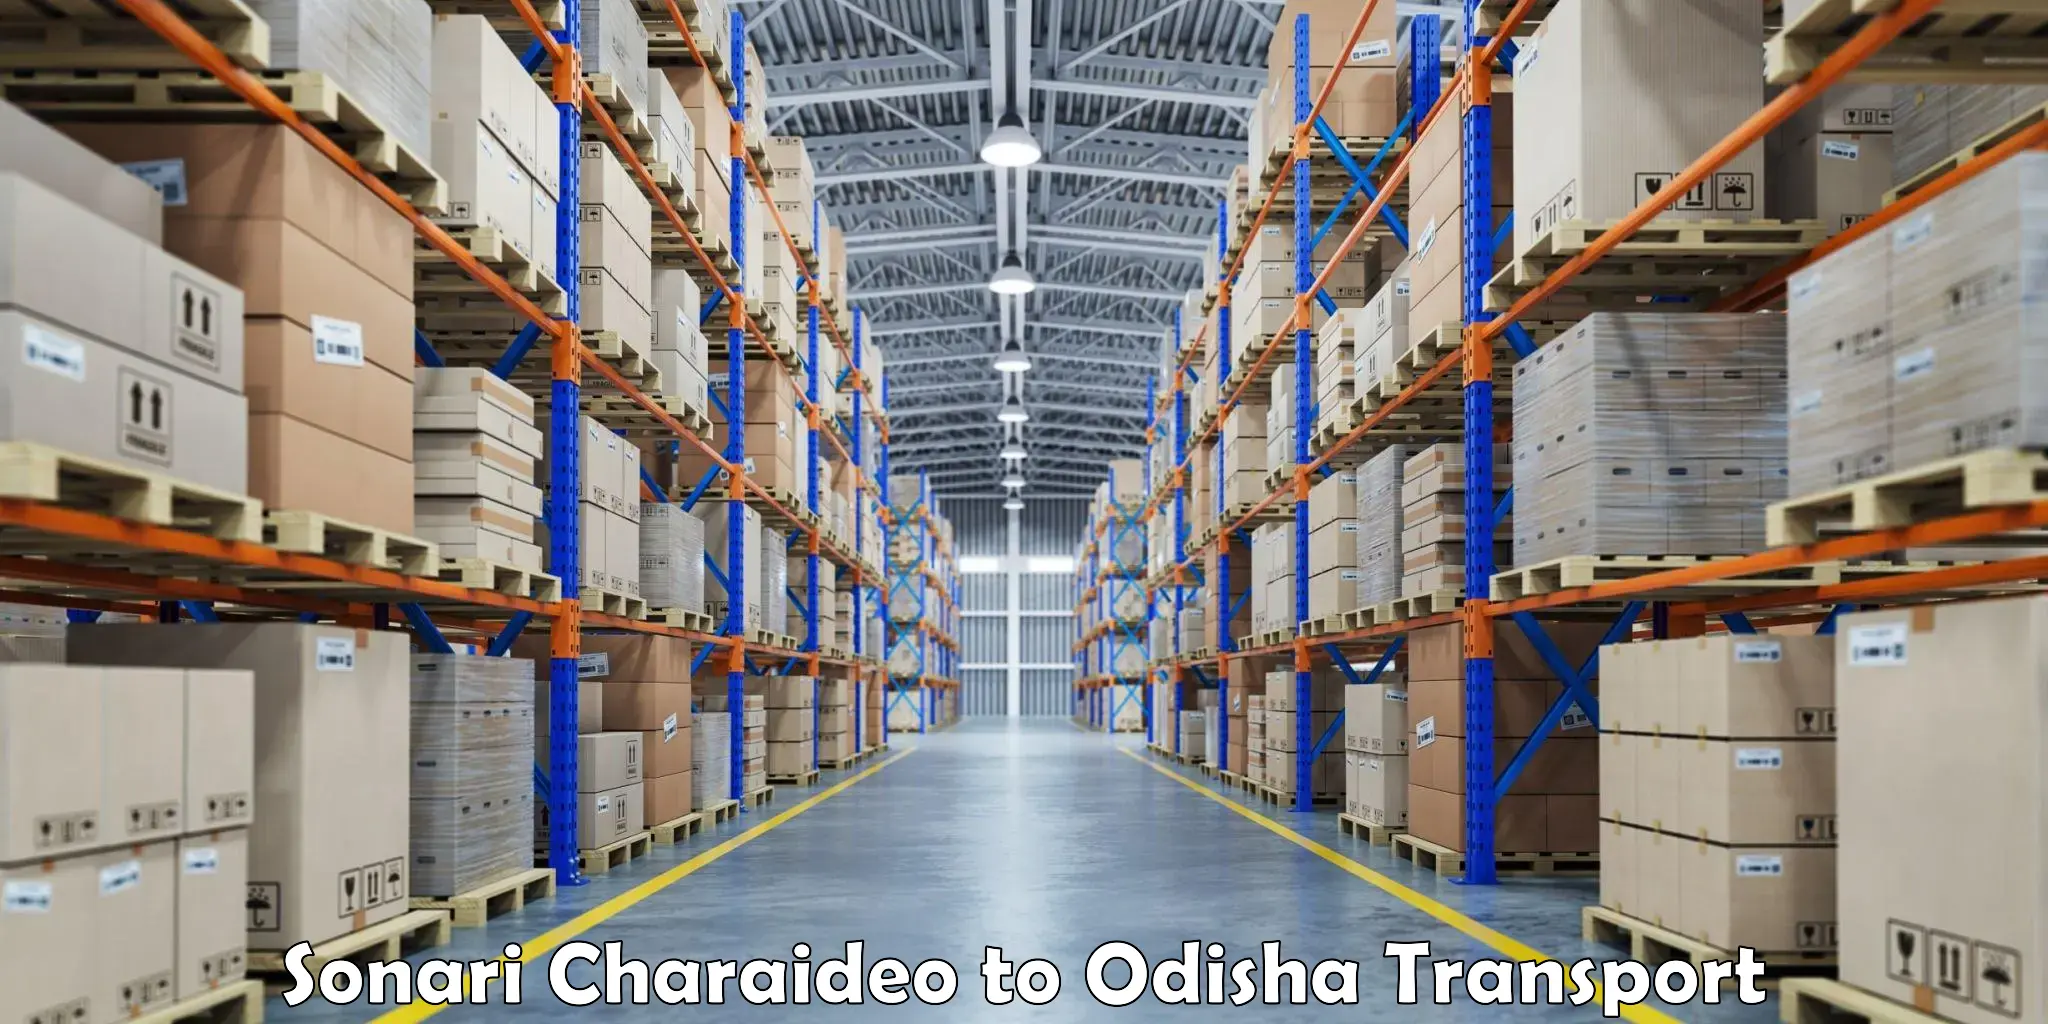 Truck transport companies in India Sonari Charaideo to Kalahandi